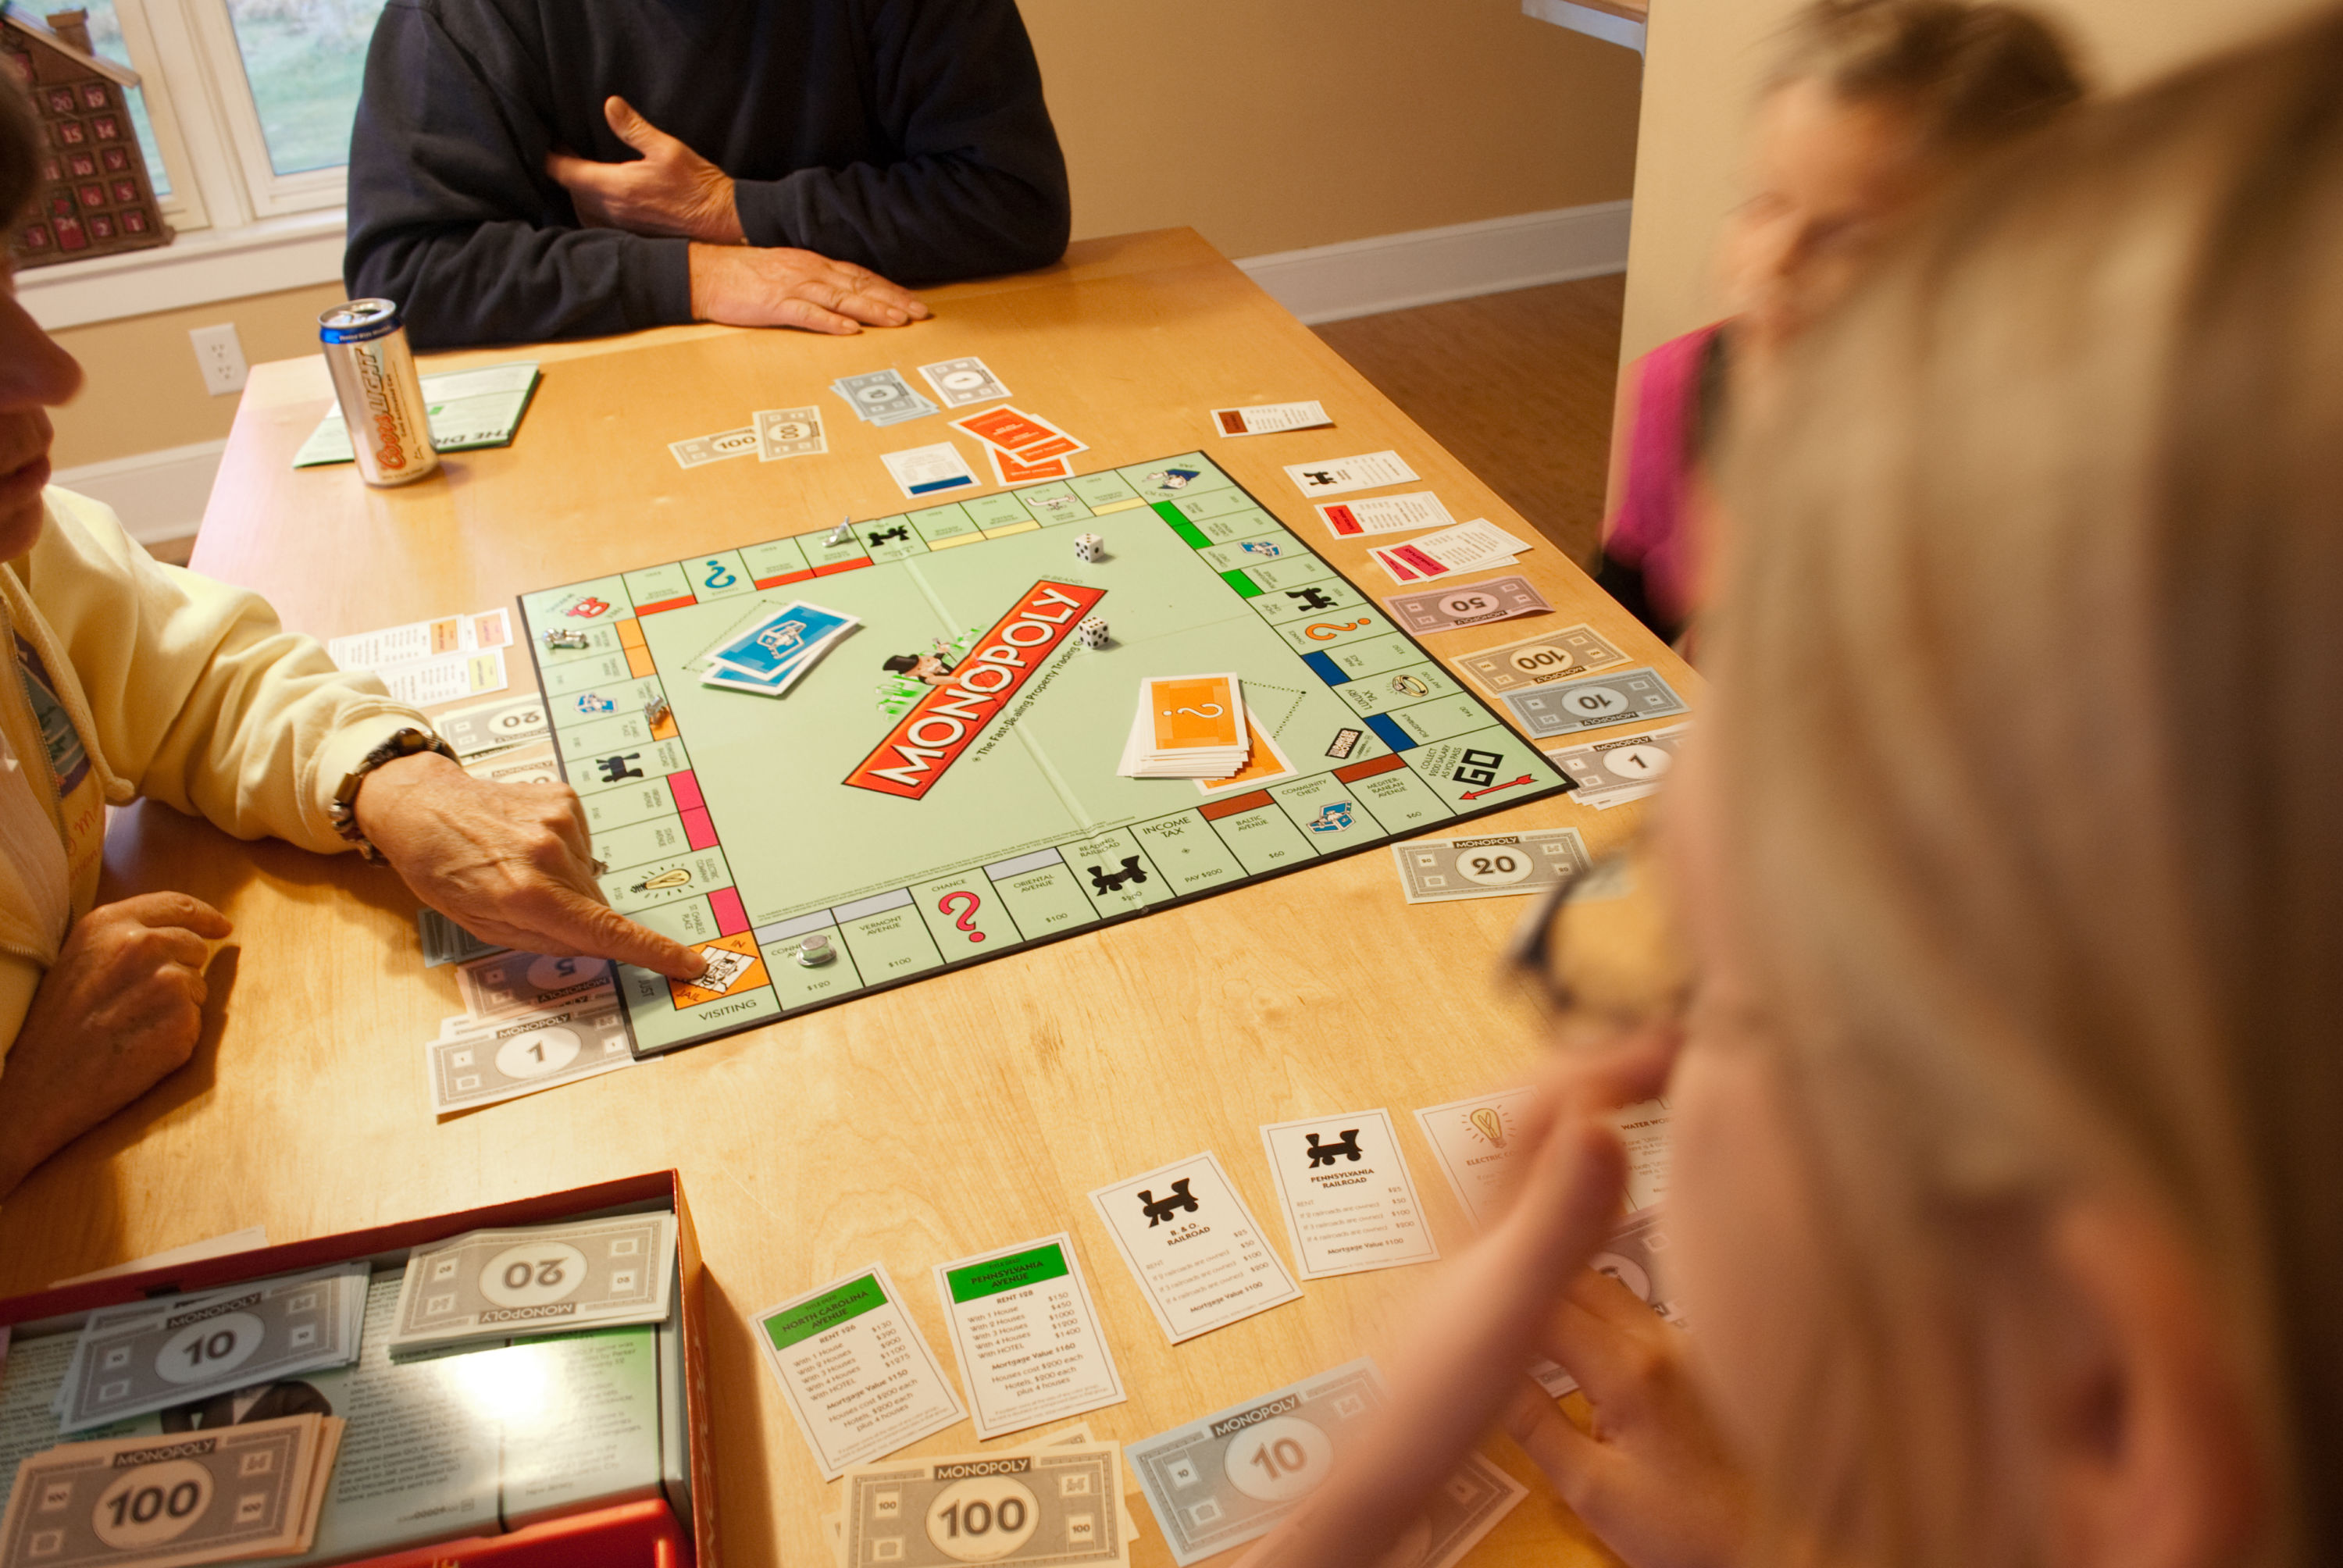 Monopoly tricheurs, jeux de societe